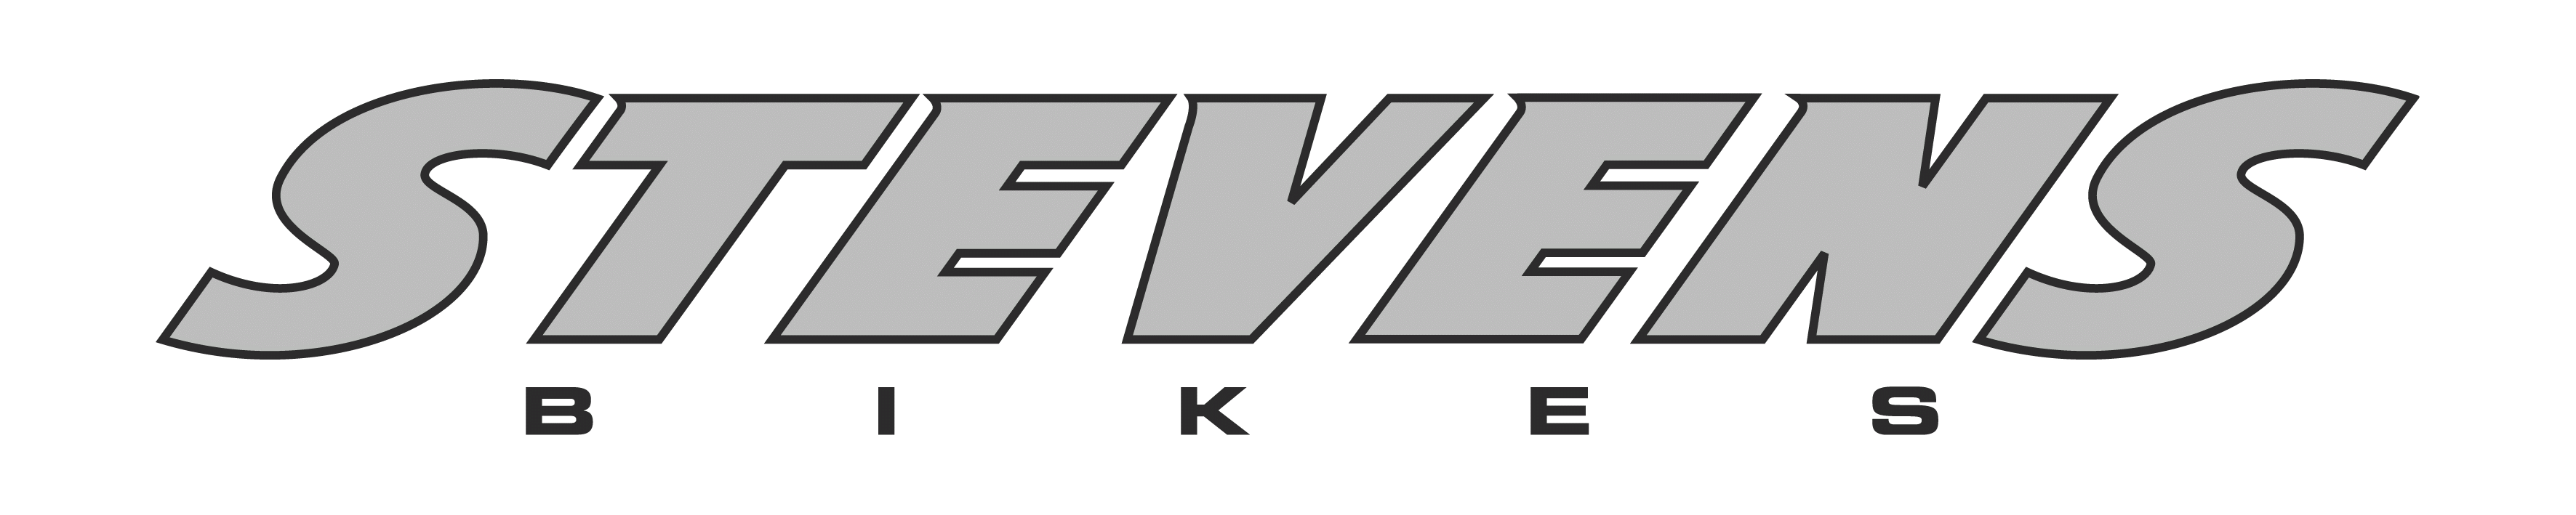 Stevens Logo - File:Stevens bikes logo.gif - Wikimedia Commons